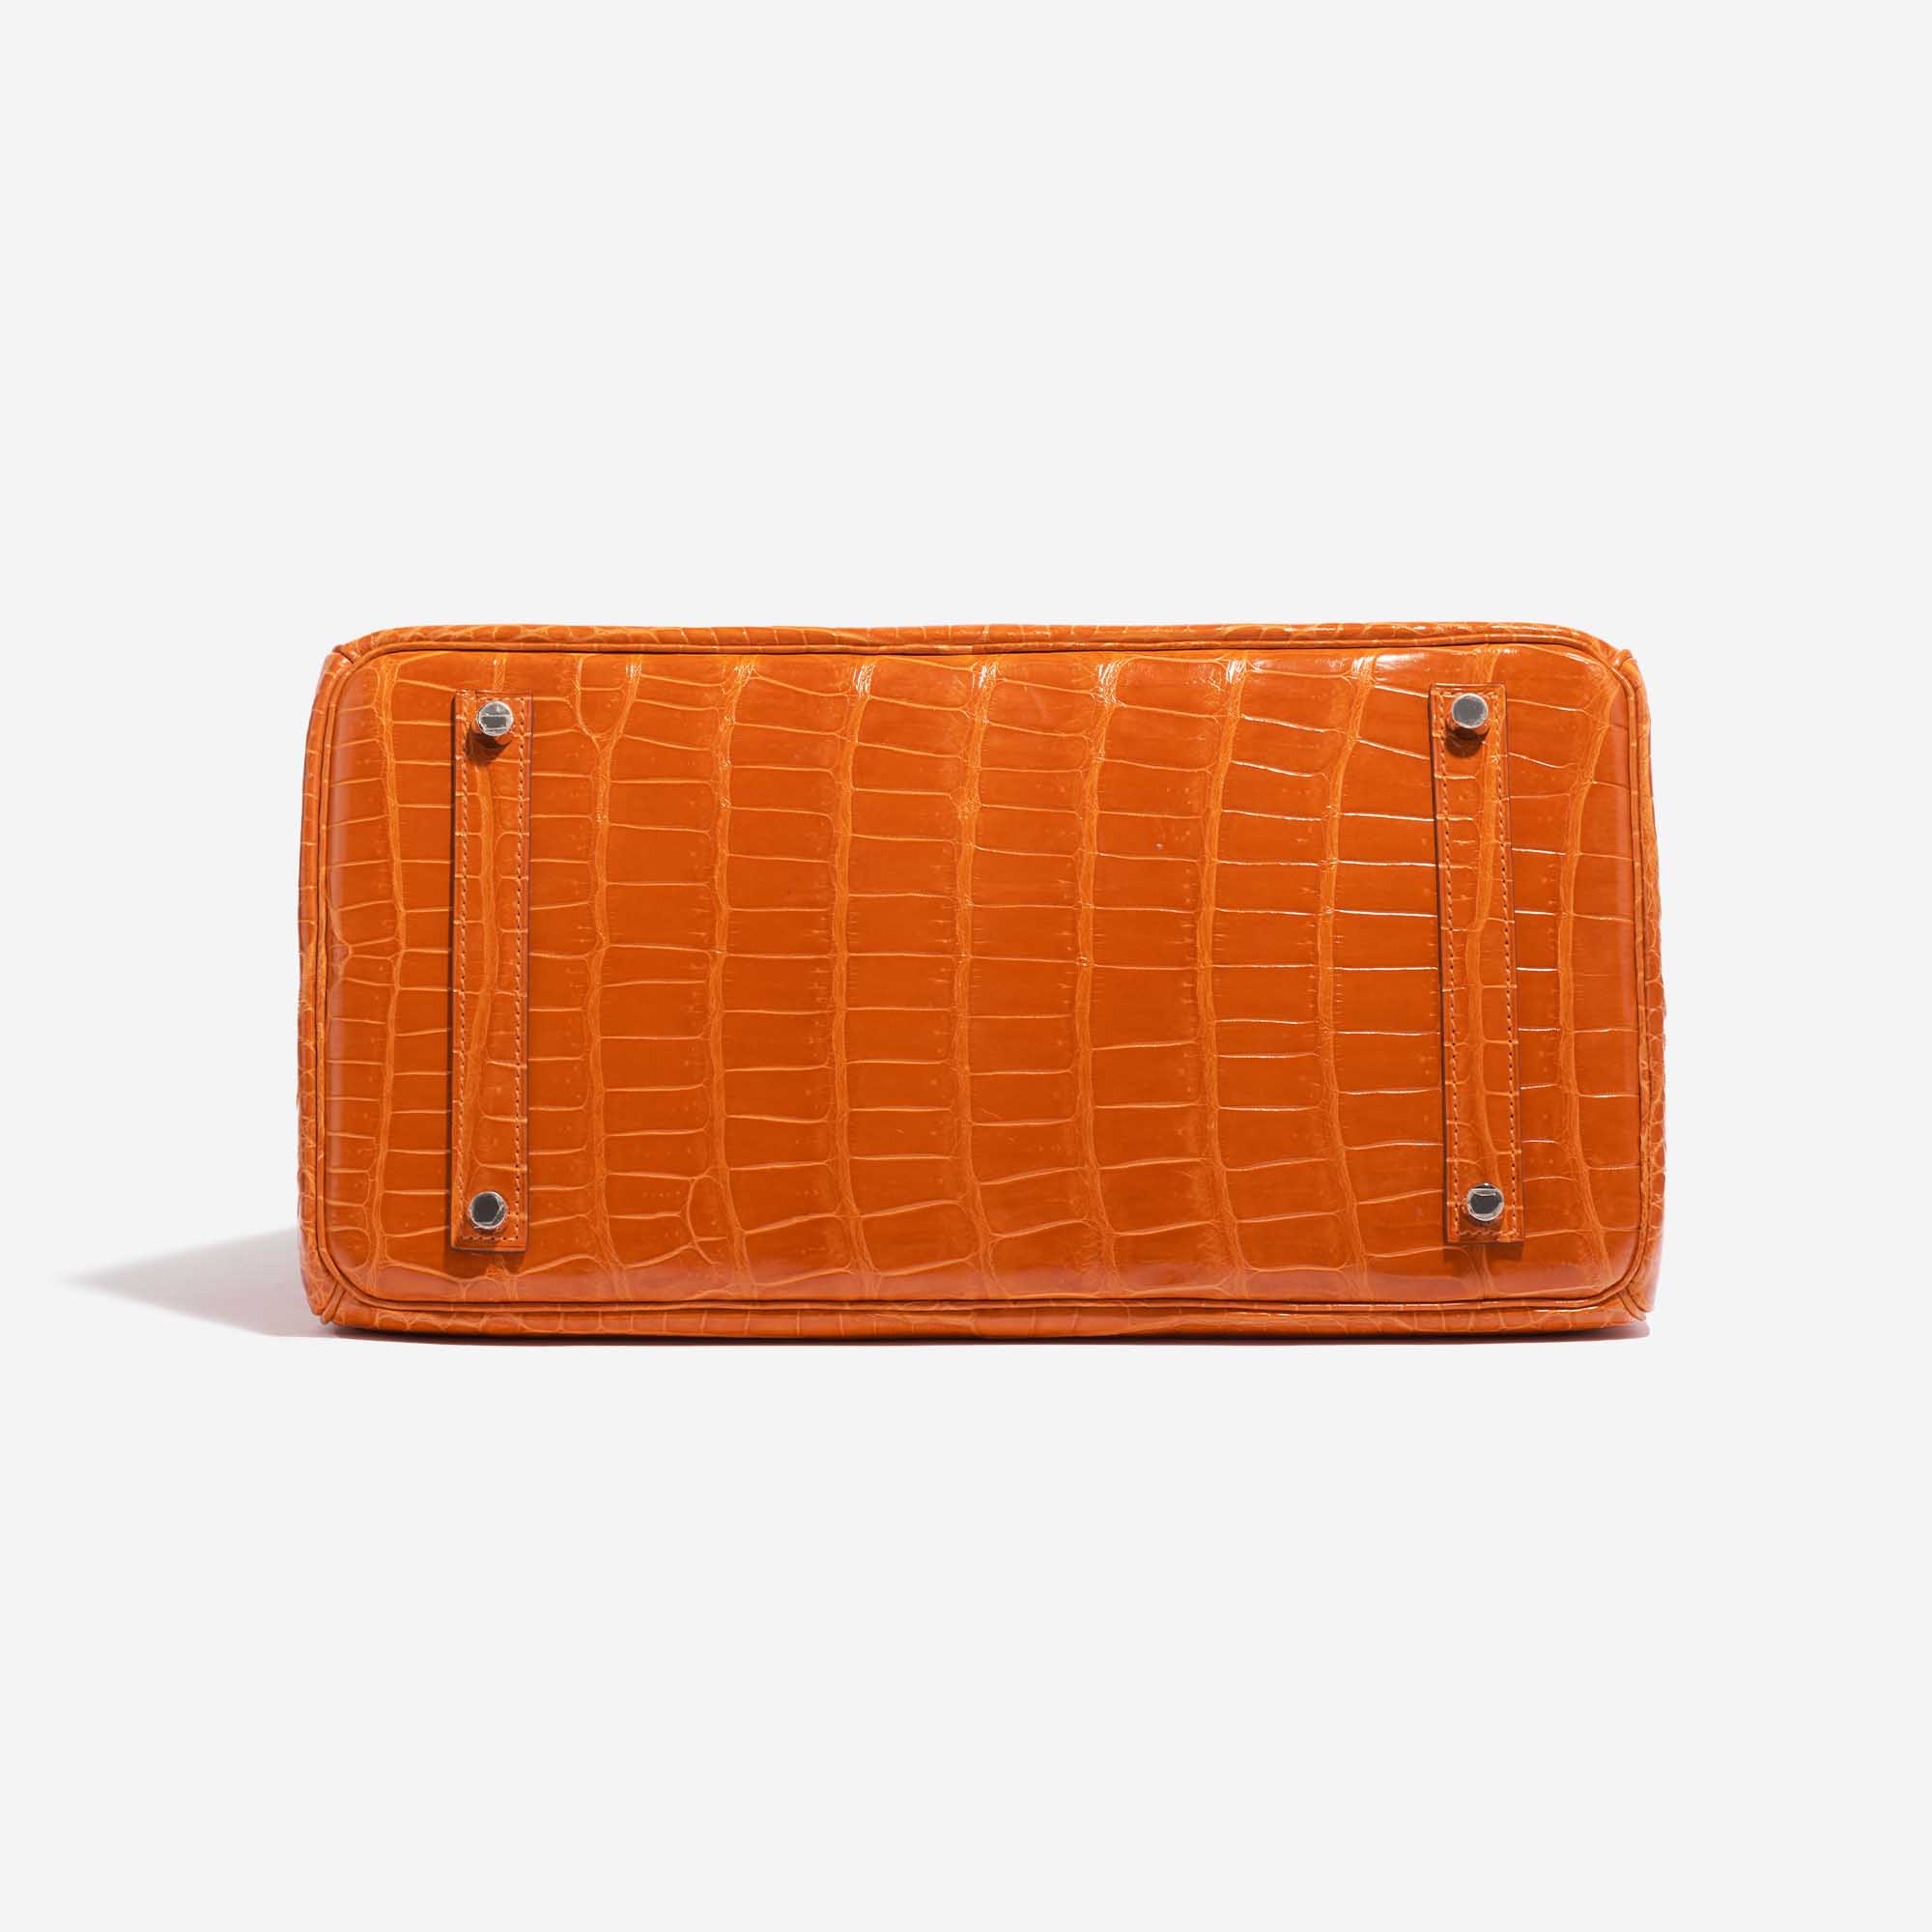 Pre-owned Hermès bag Birkin 35 Porosus Crocodile Pain d’épice Orange Bottom | Sell your designer bag on Saclab.com